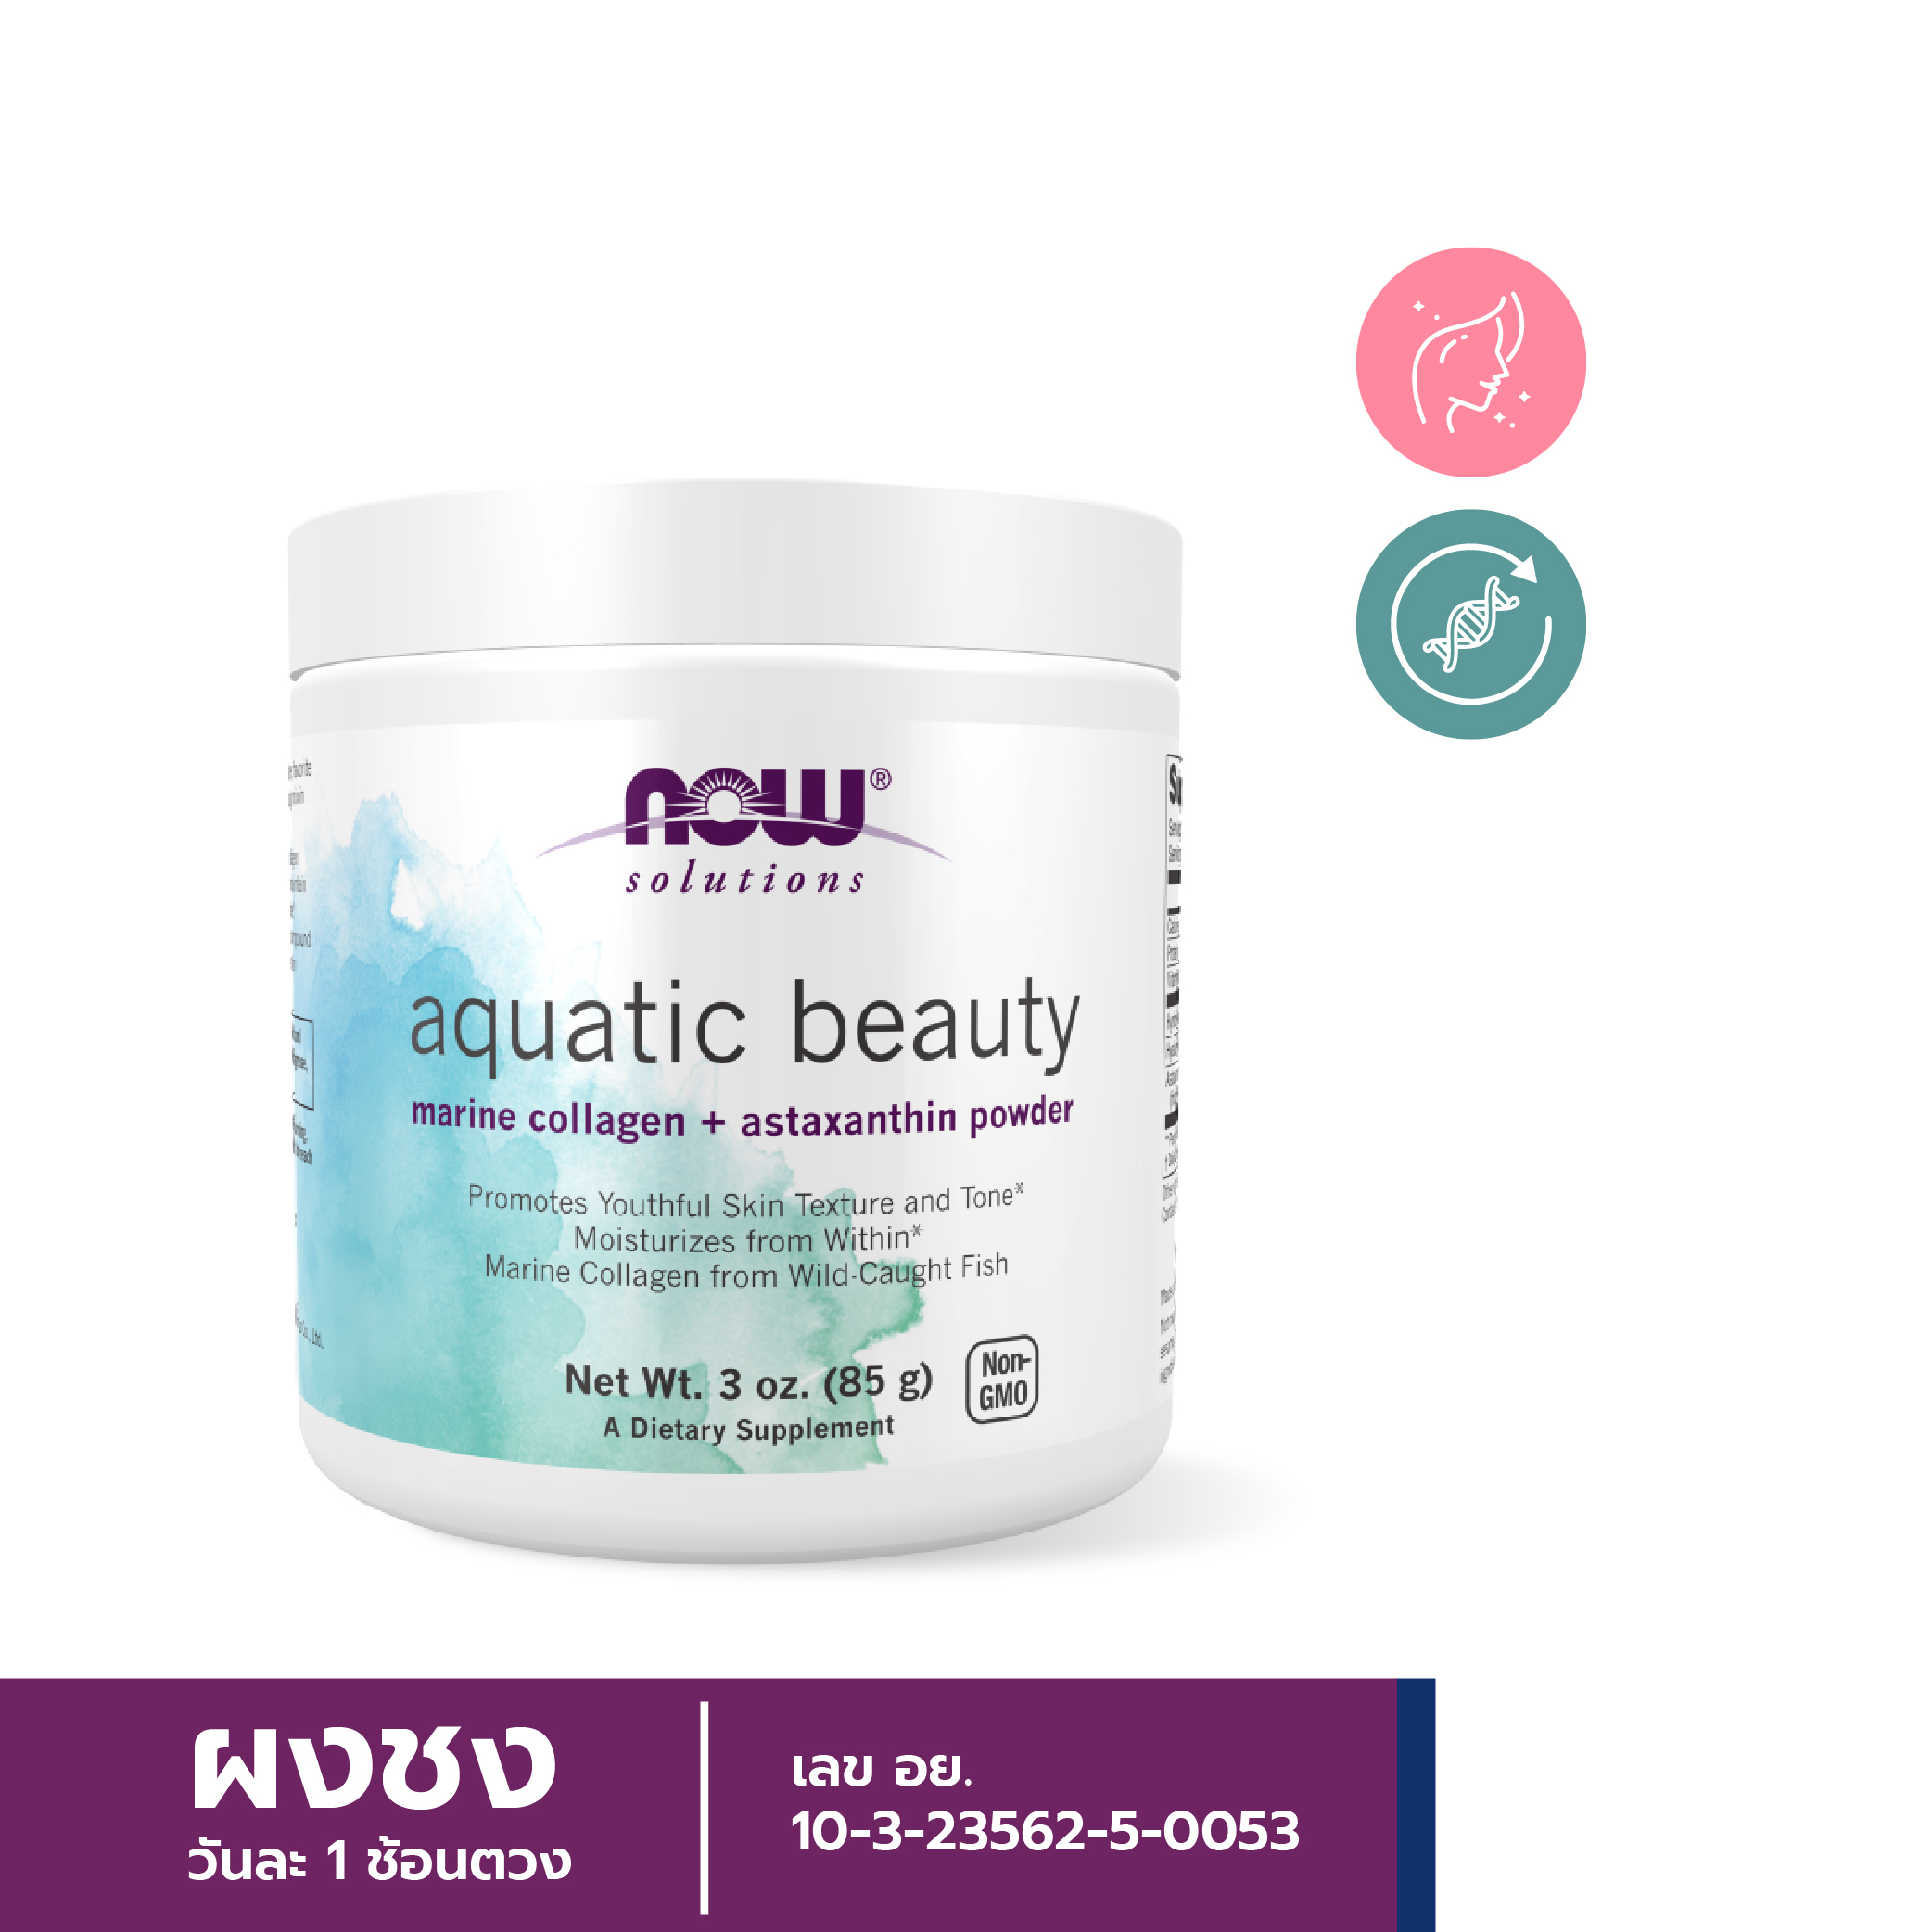 [ลูกค้าใหม่กรอก FORYOU89 ลดเลย 89.-] NOW Aquatic Beauty Powder (3oz)